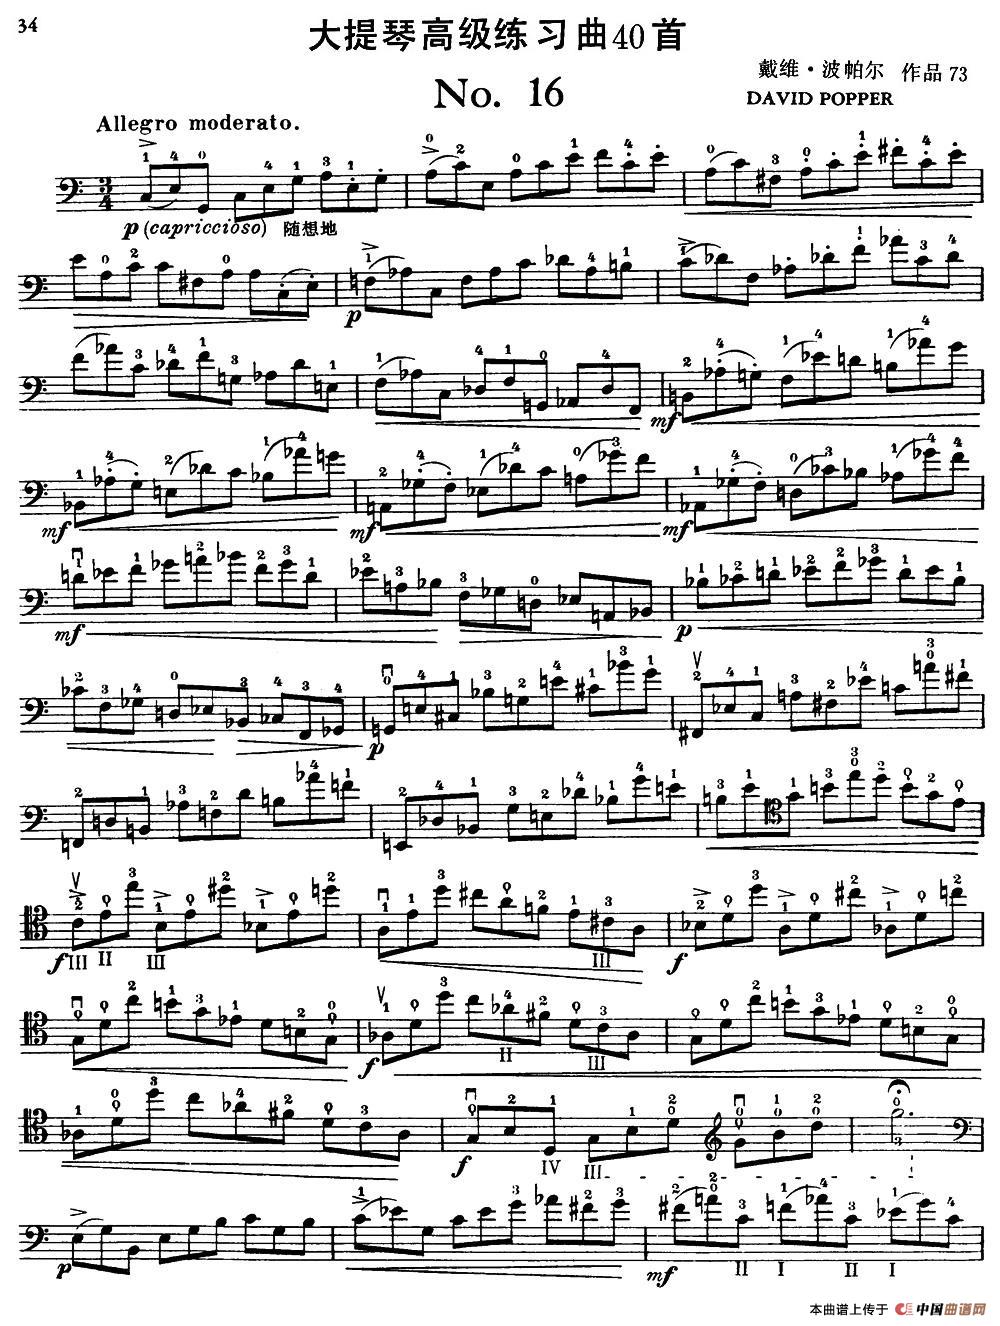 曲谱大提琴_一剪梅大提琴曲谱(3)